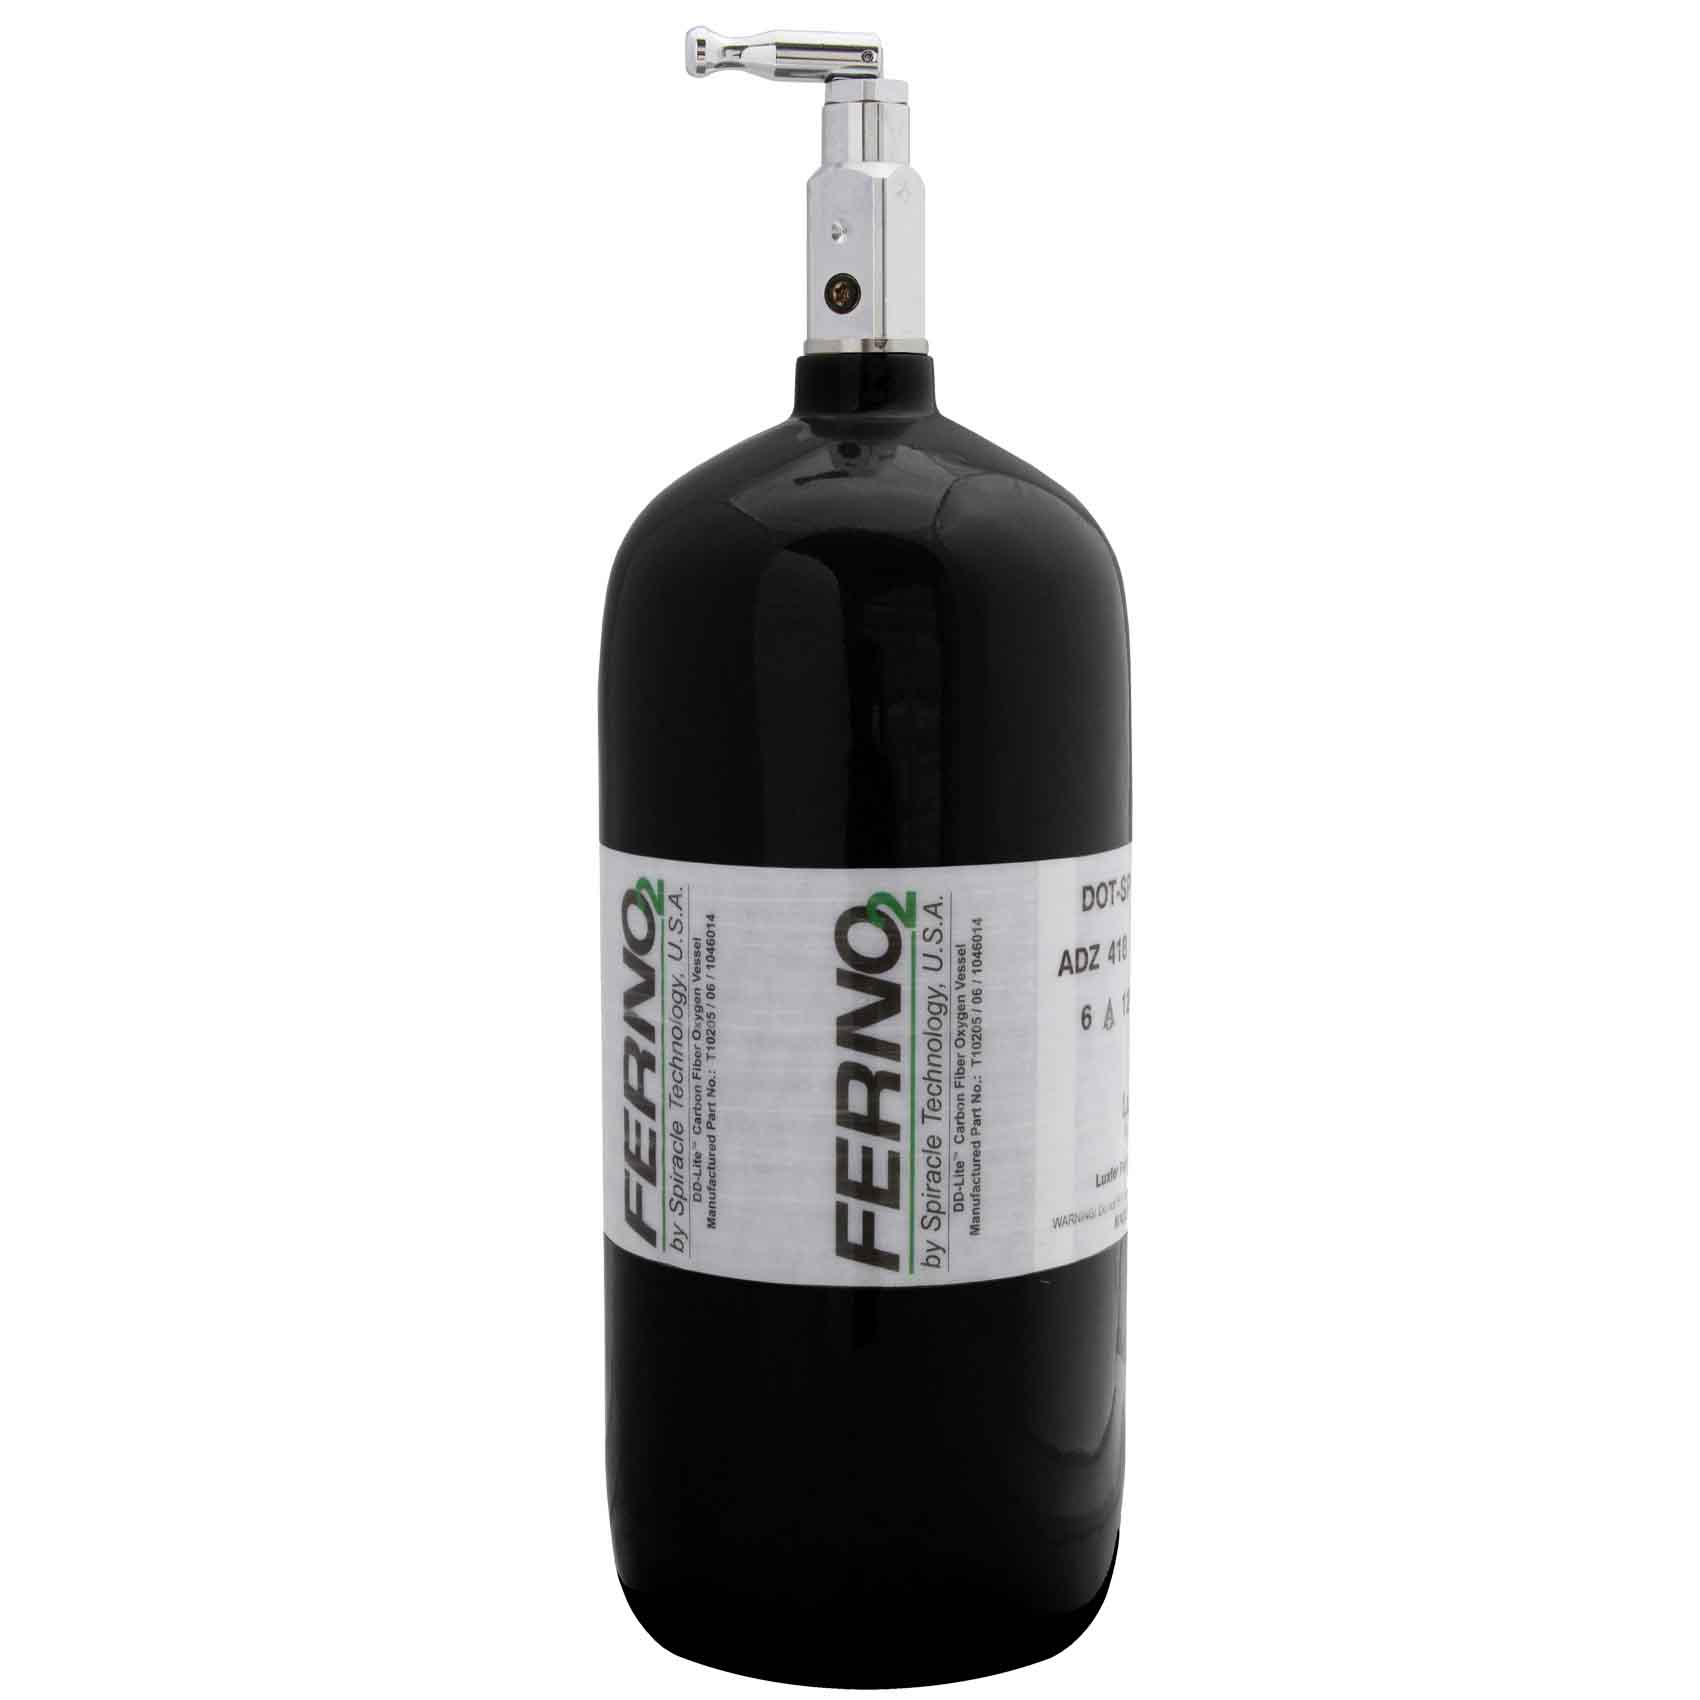 Ferno2 Lite Carbon Fiber 02 Bottles